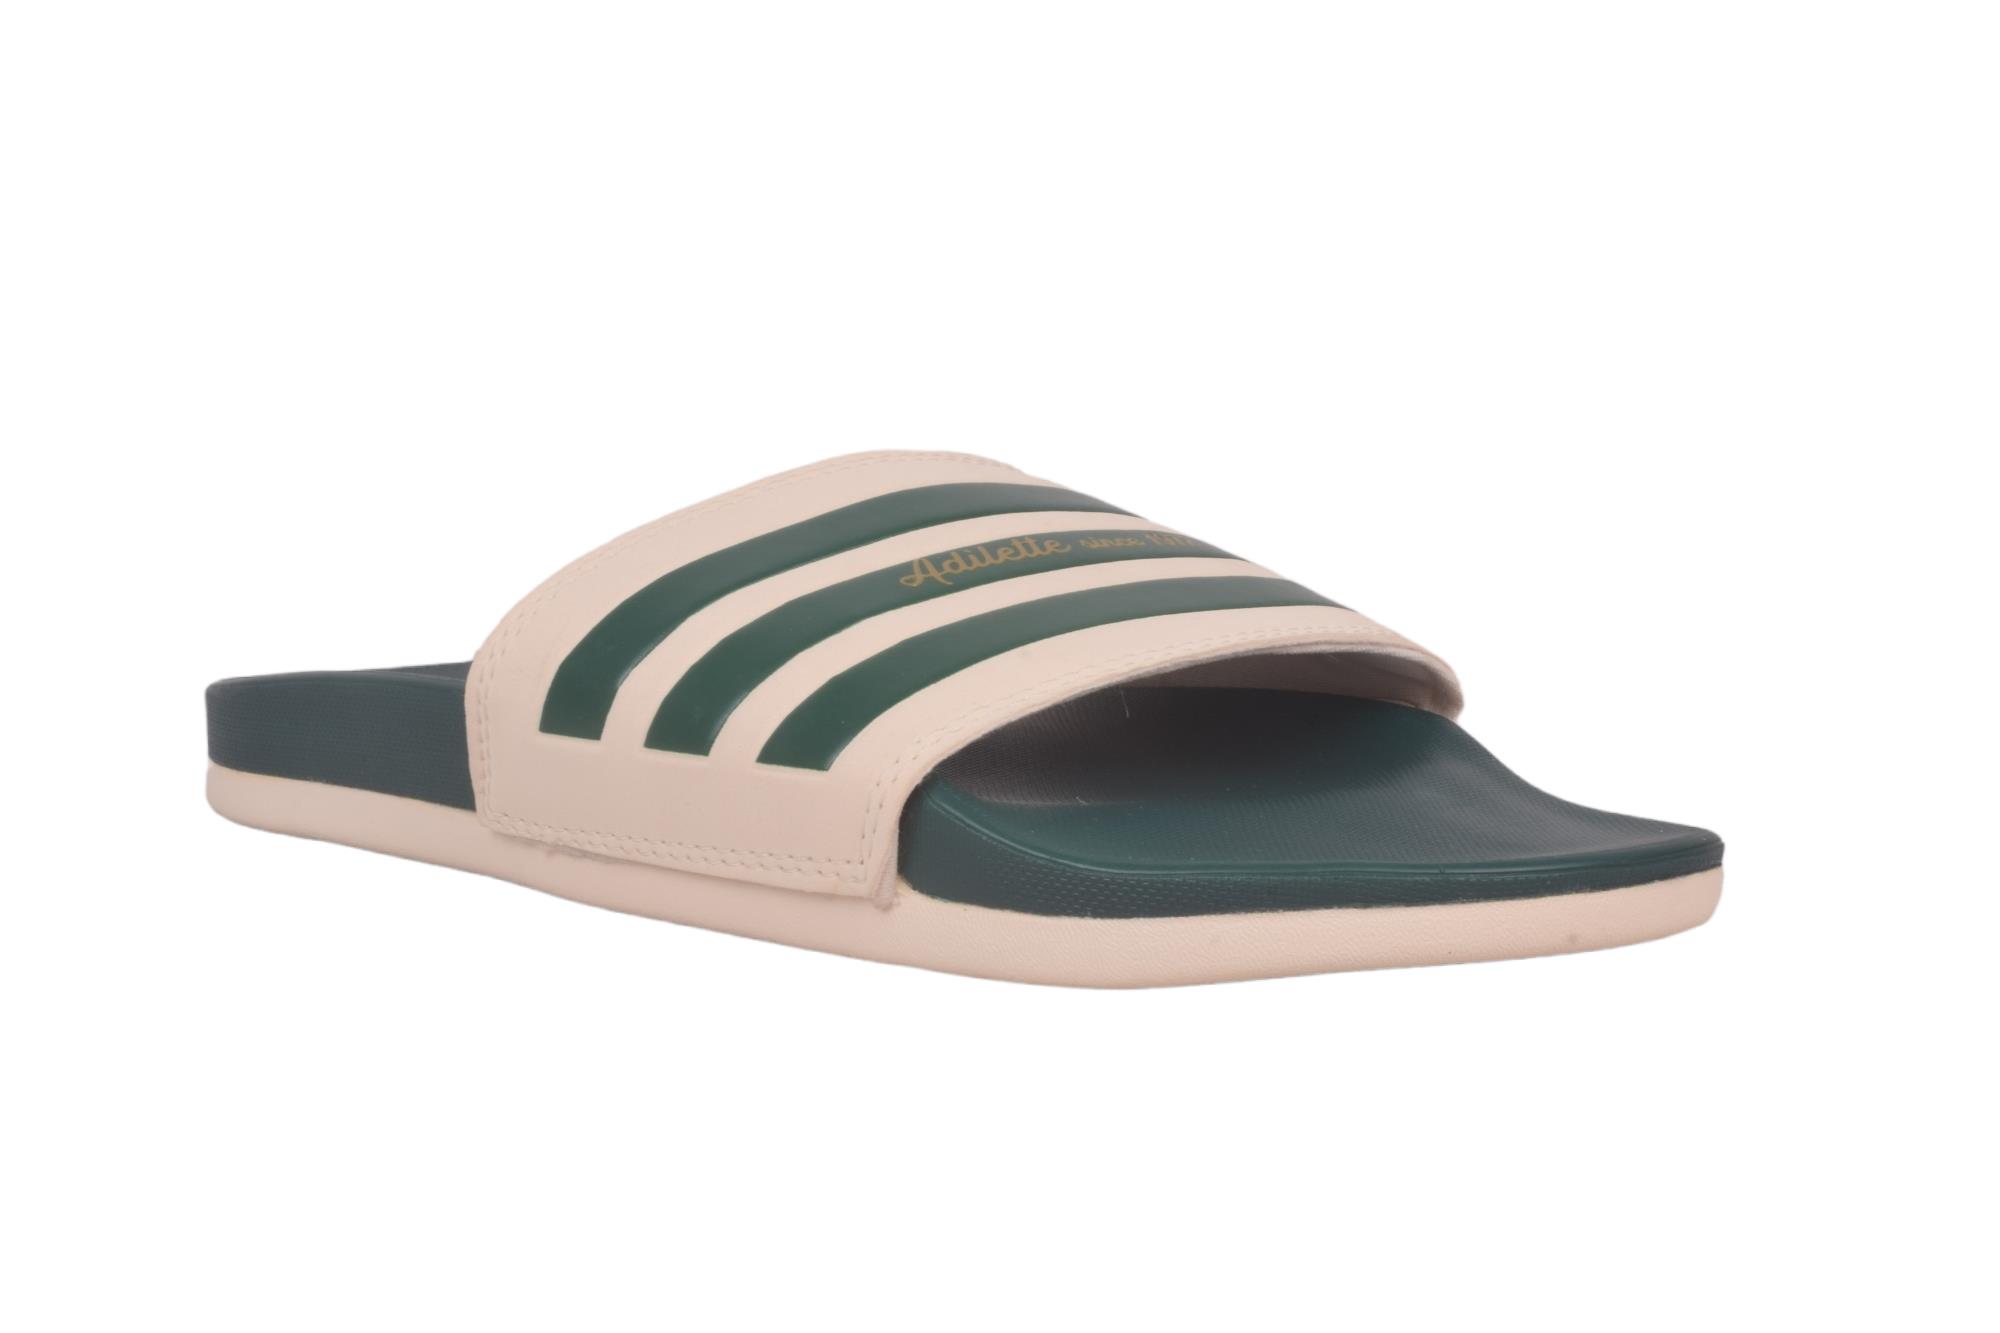 Buy Shoetopia Lightweight Comfortable Daily Wear & Trendy Flatforms Grey  Sandals Online